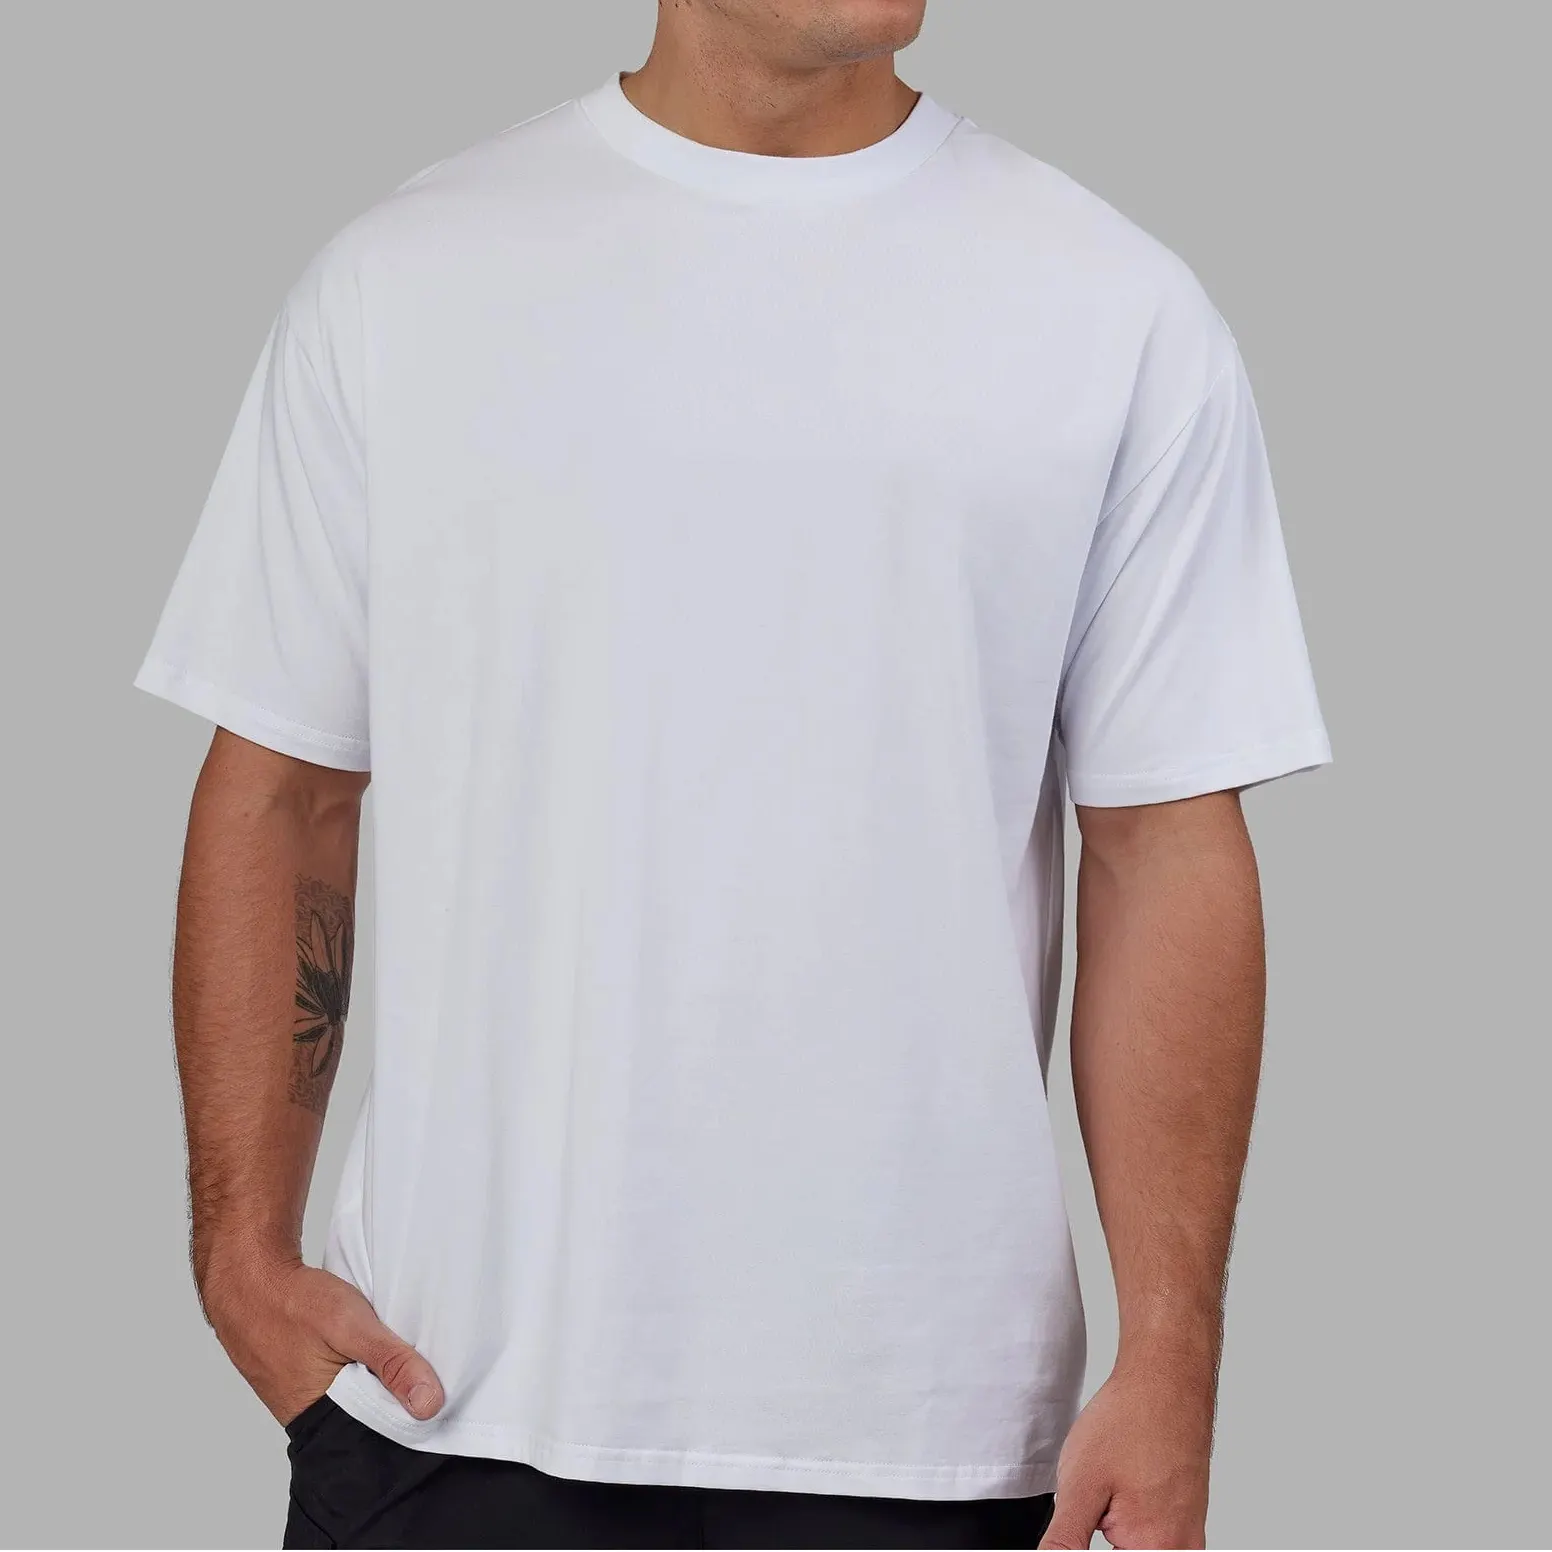 Camiseta esportiva lisa com gola simulada de 5 spandex unissex de algodão 95 de tamanho grande com logotipo personalizado e design de moda de luxo